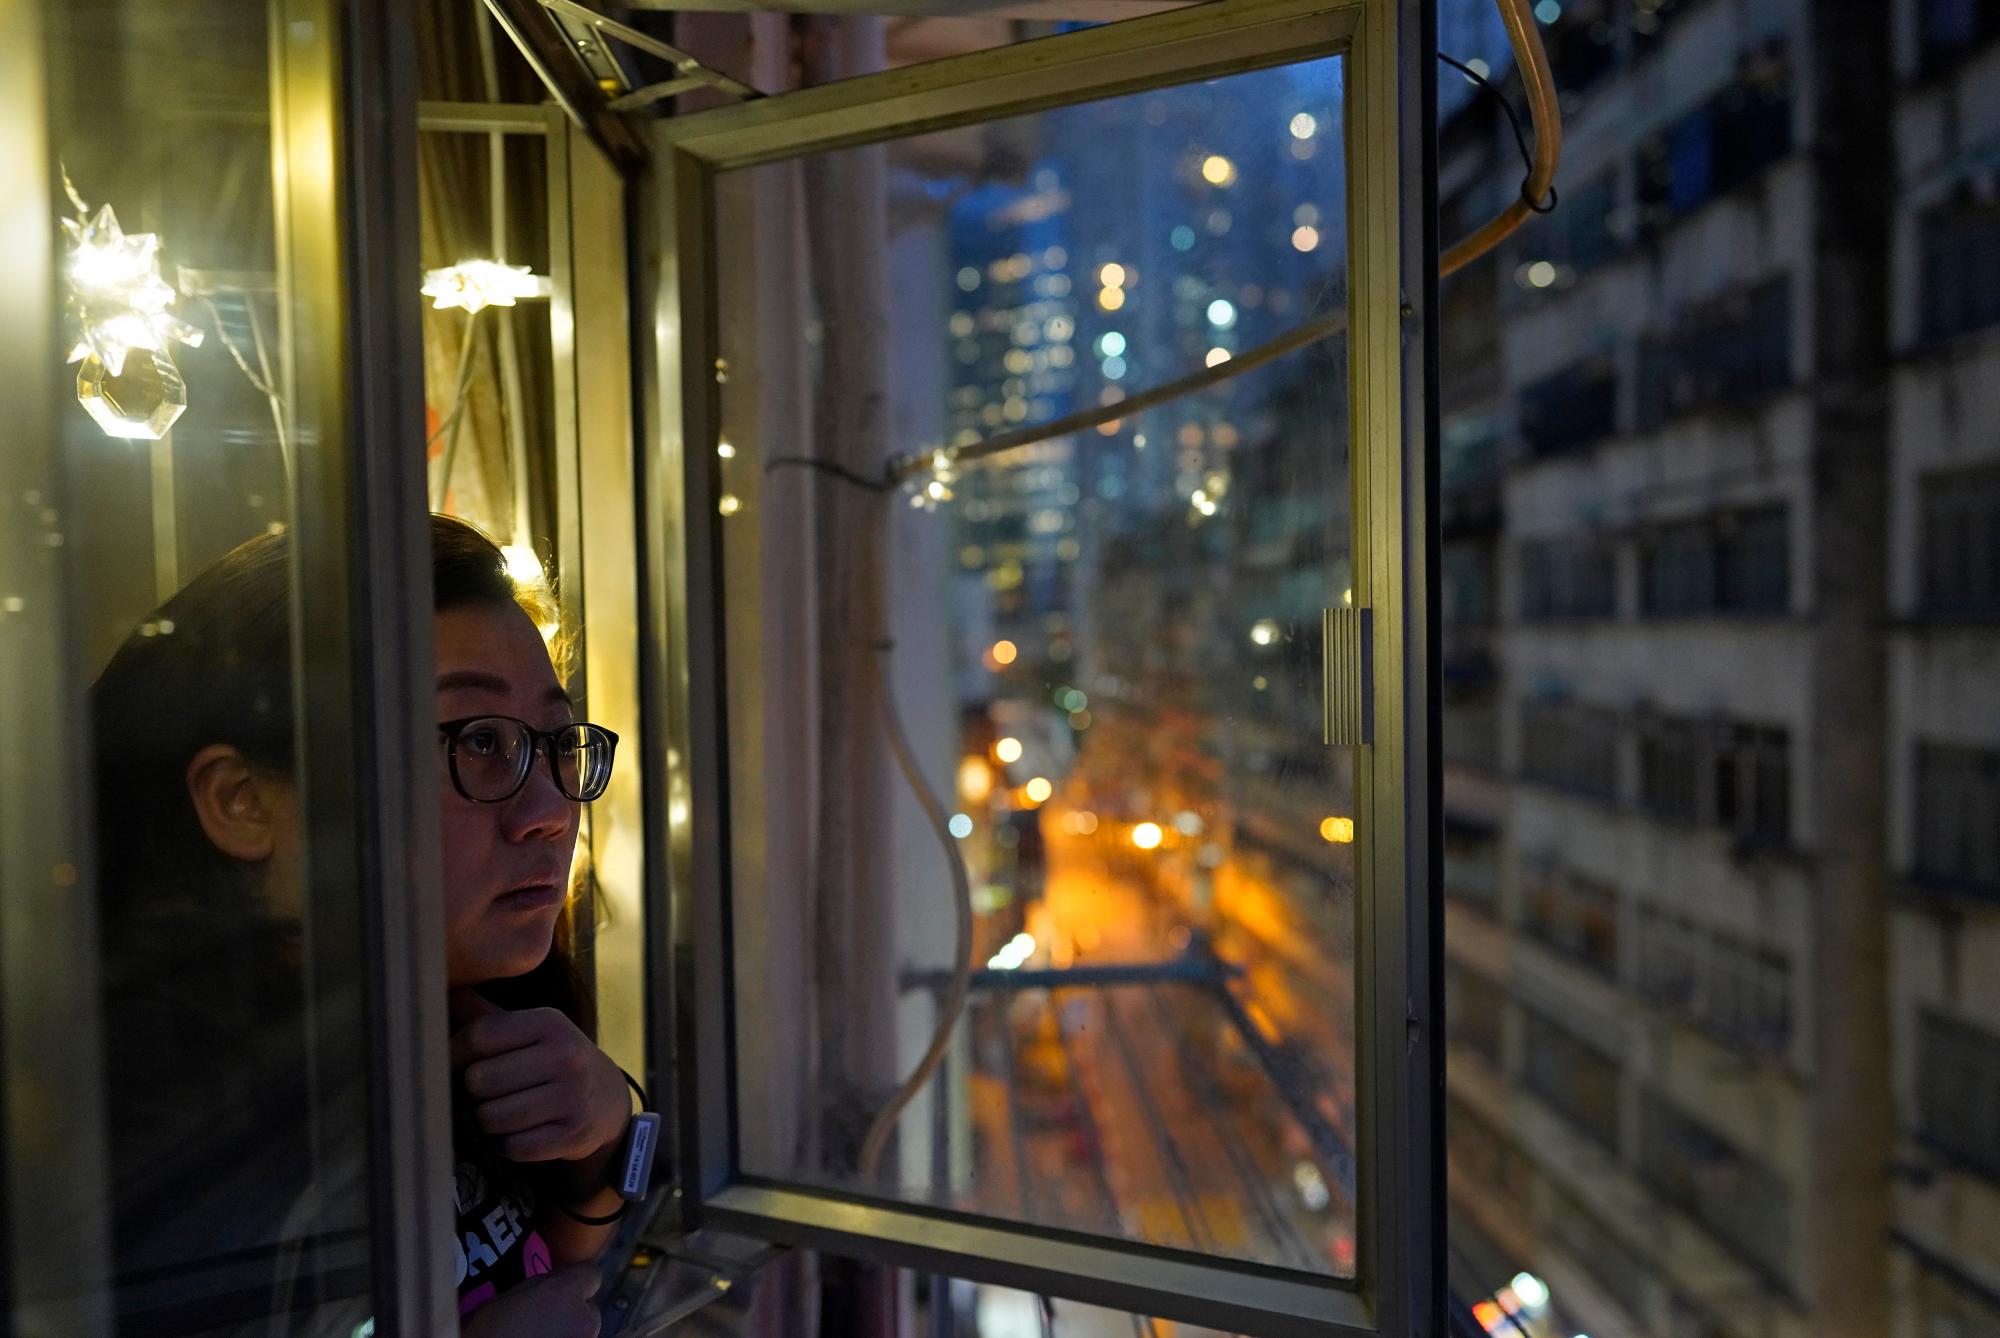 La reportera de Associated Press, Zen Soo, asoma la cabeza por la ventana para tomar aire fresco mientras cumple su cuarentena de 14 días en su hogar en Hong Kong, el 17 de abril de 2020. Hong Kong emitió pulseras de cuarentena para monitorear a los residentes que regresan de la ciudad mientras cumplen su obligación. Cuarentena de 14 días, en un intento por frenar las transmisiones locales de COVID-19 durante la pandemia. (Foto AP / Vincent Yu)